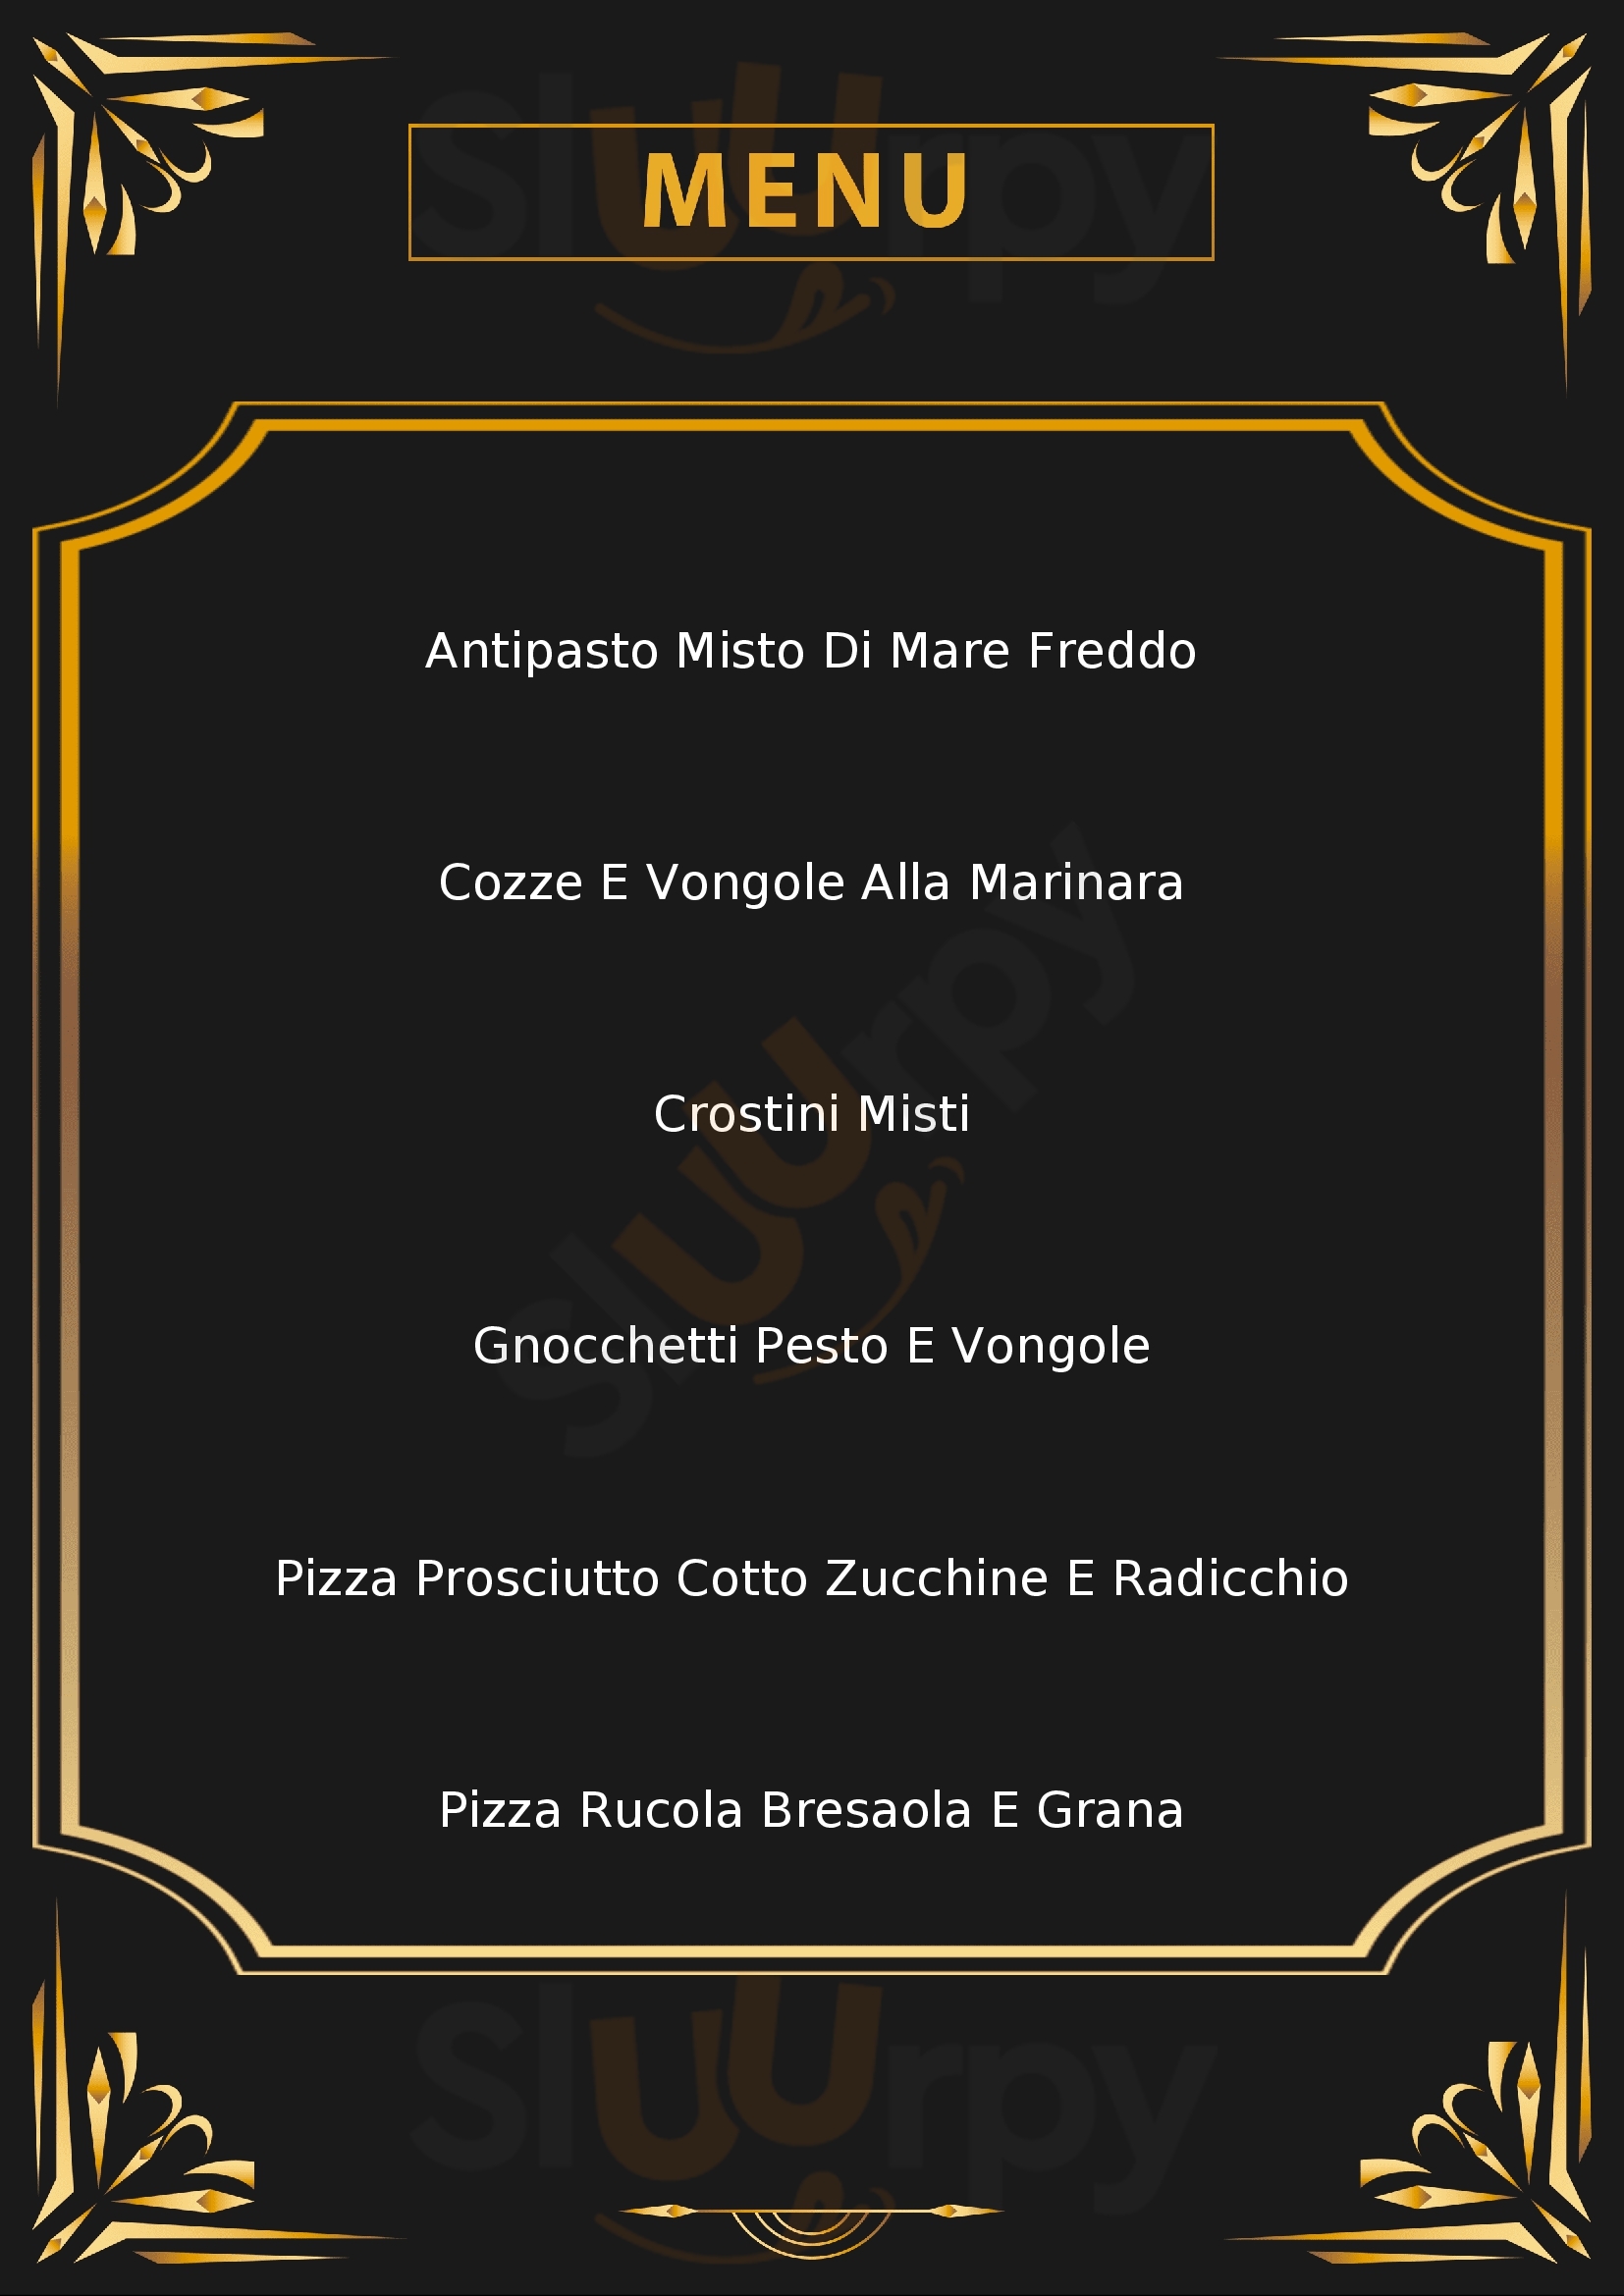 La conchiglia di Michele ristorante pizzeria Riccione menù 1 pagina